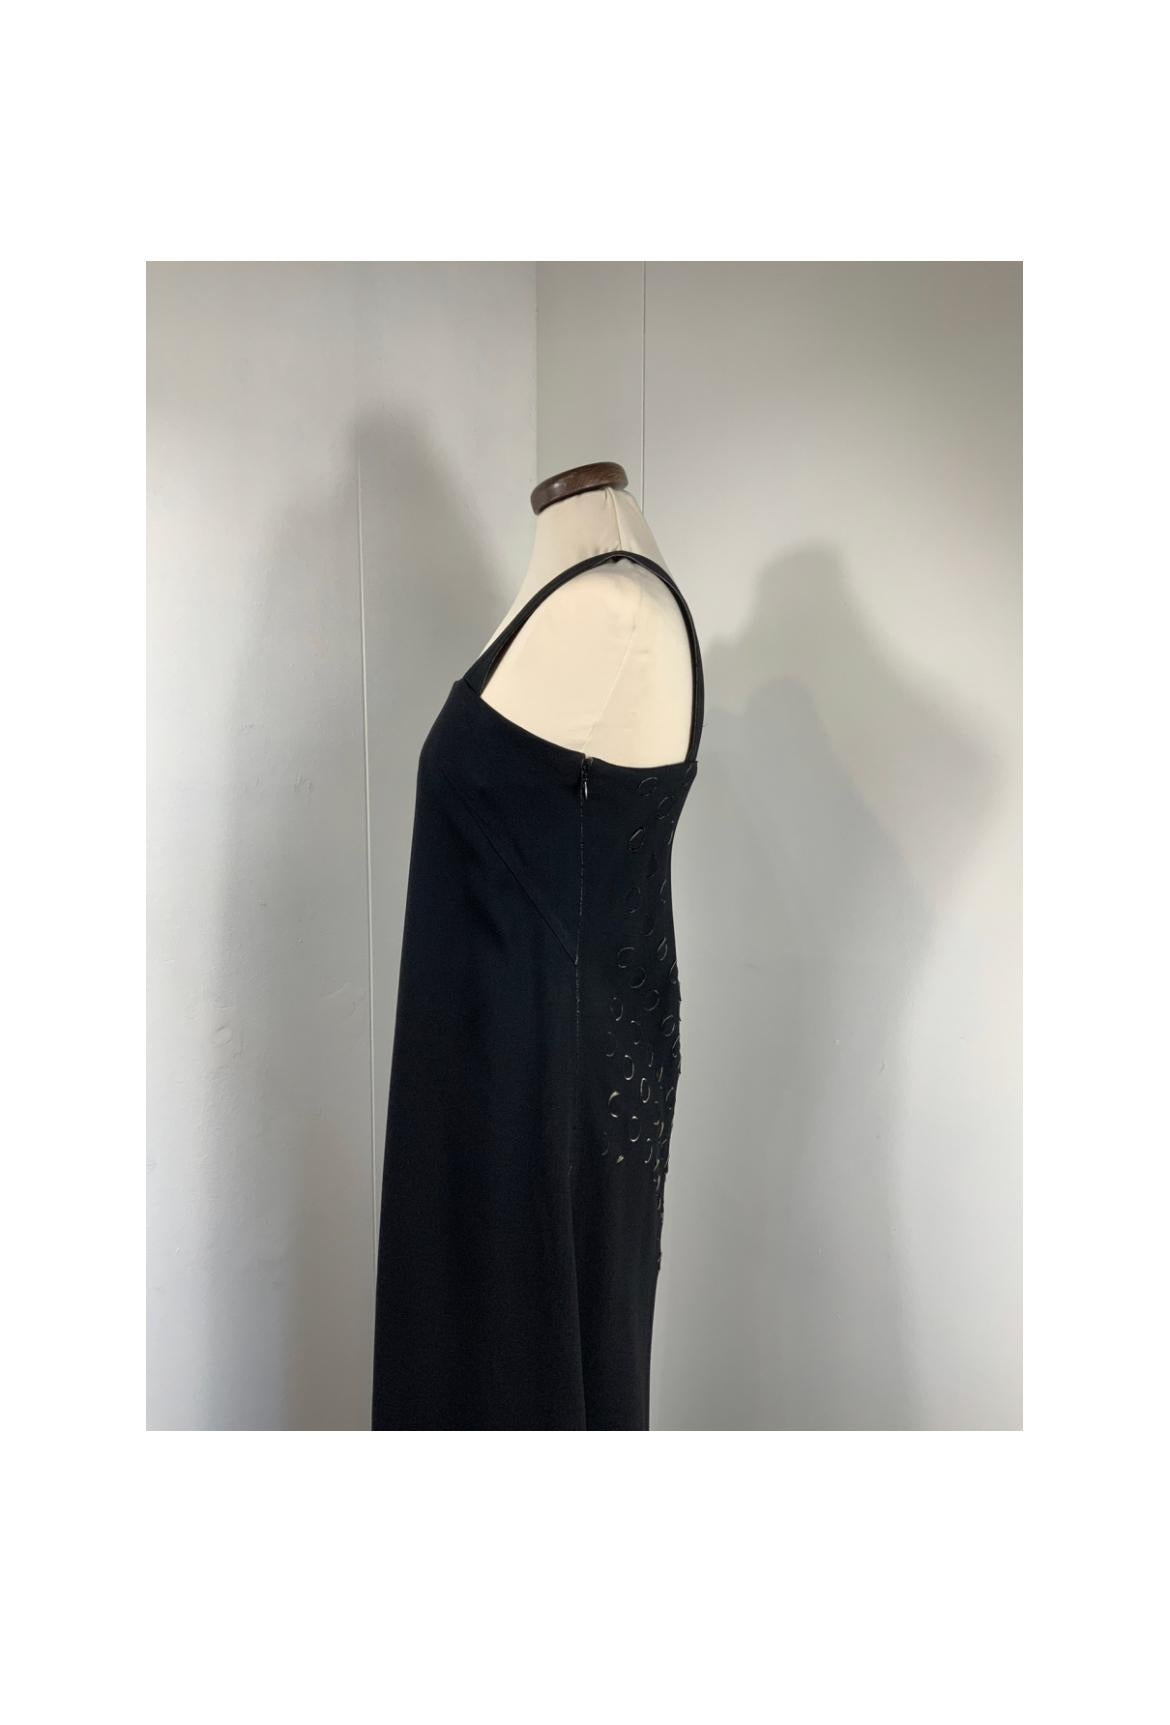 Women's or Men's Maison Martin Margiela black dress. For Sale